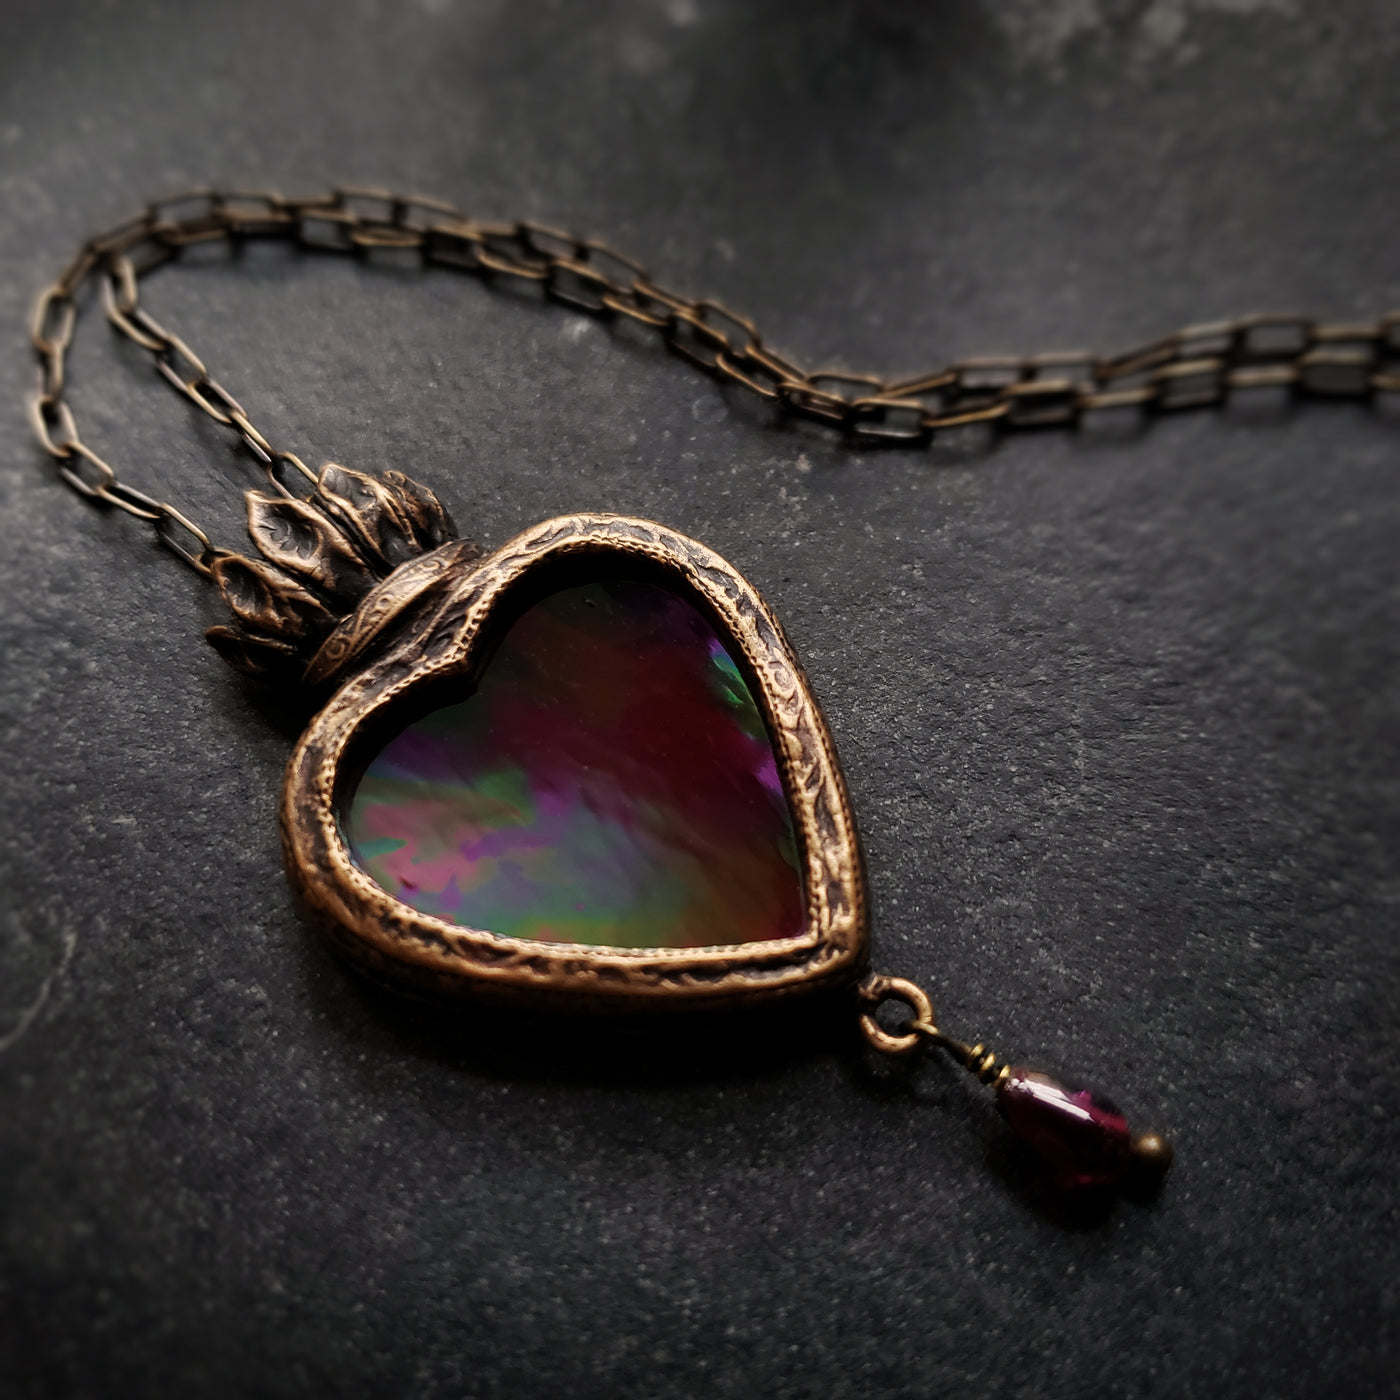 divinum lumen - a sacred heart amulet